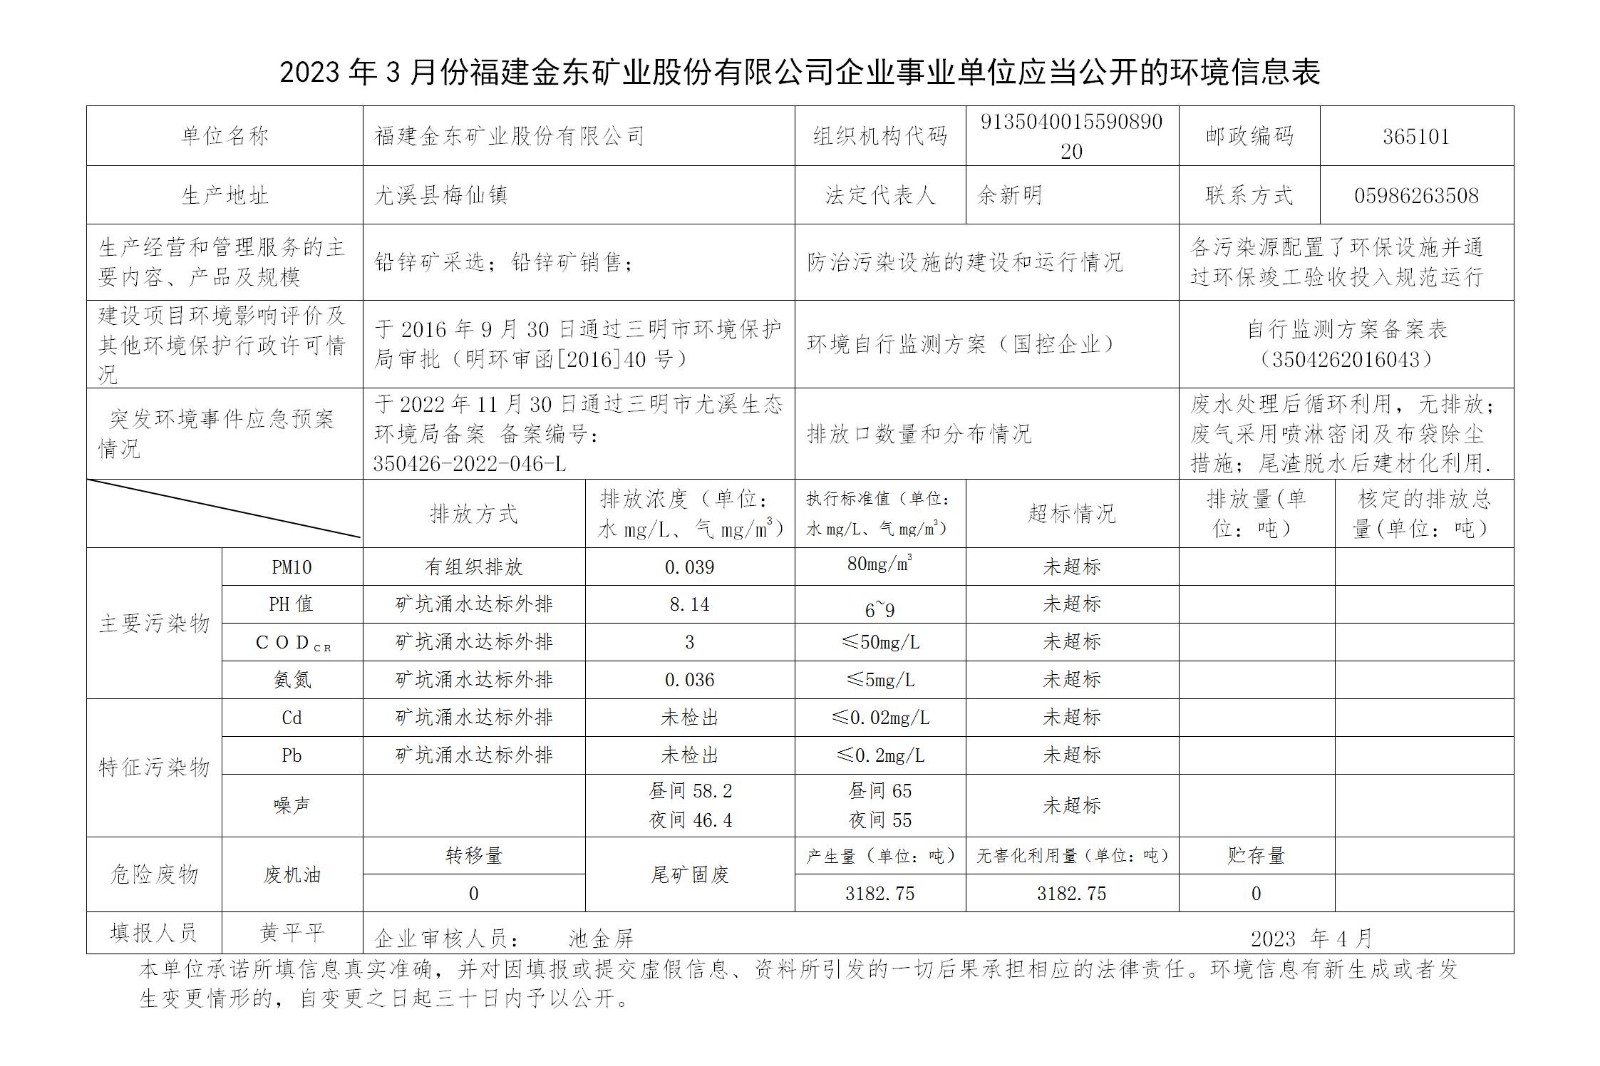 2023年3月份买球赛软件官网（中国）有限公司企业事业单位应当公开的环境信息表_01.jpg